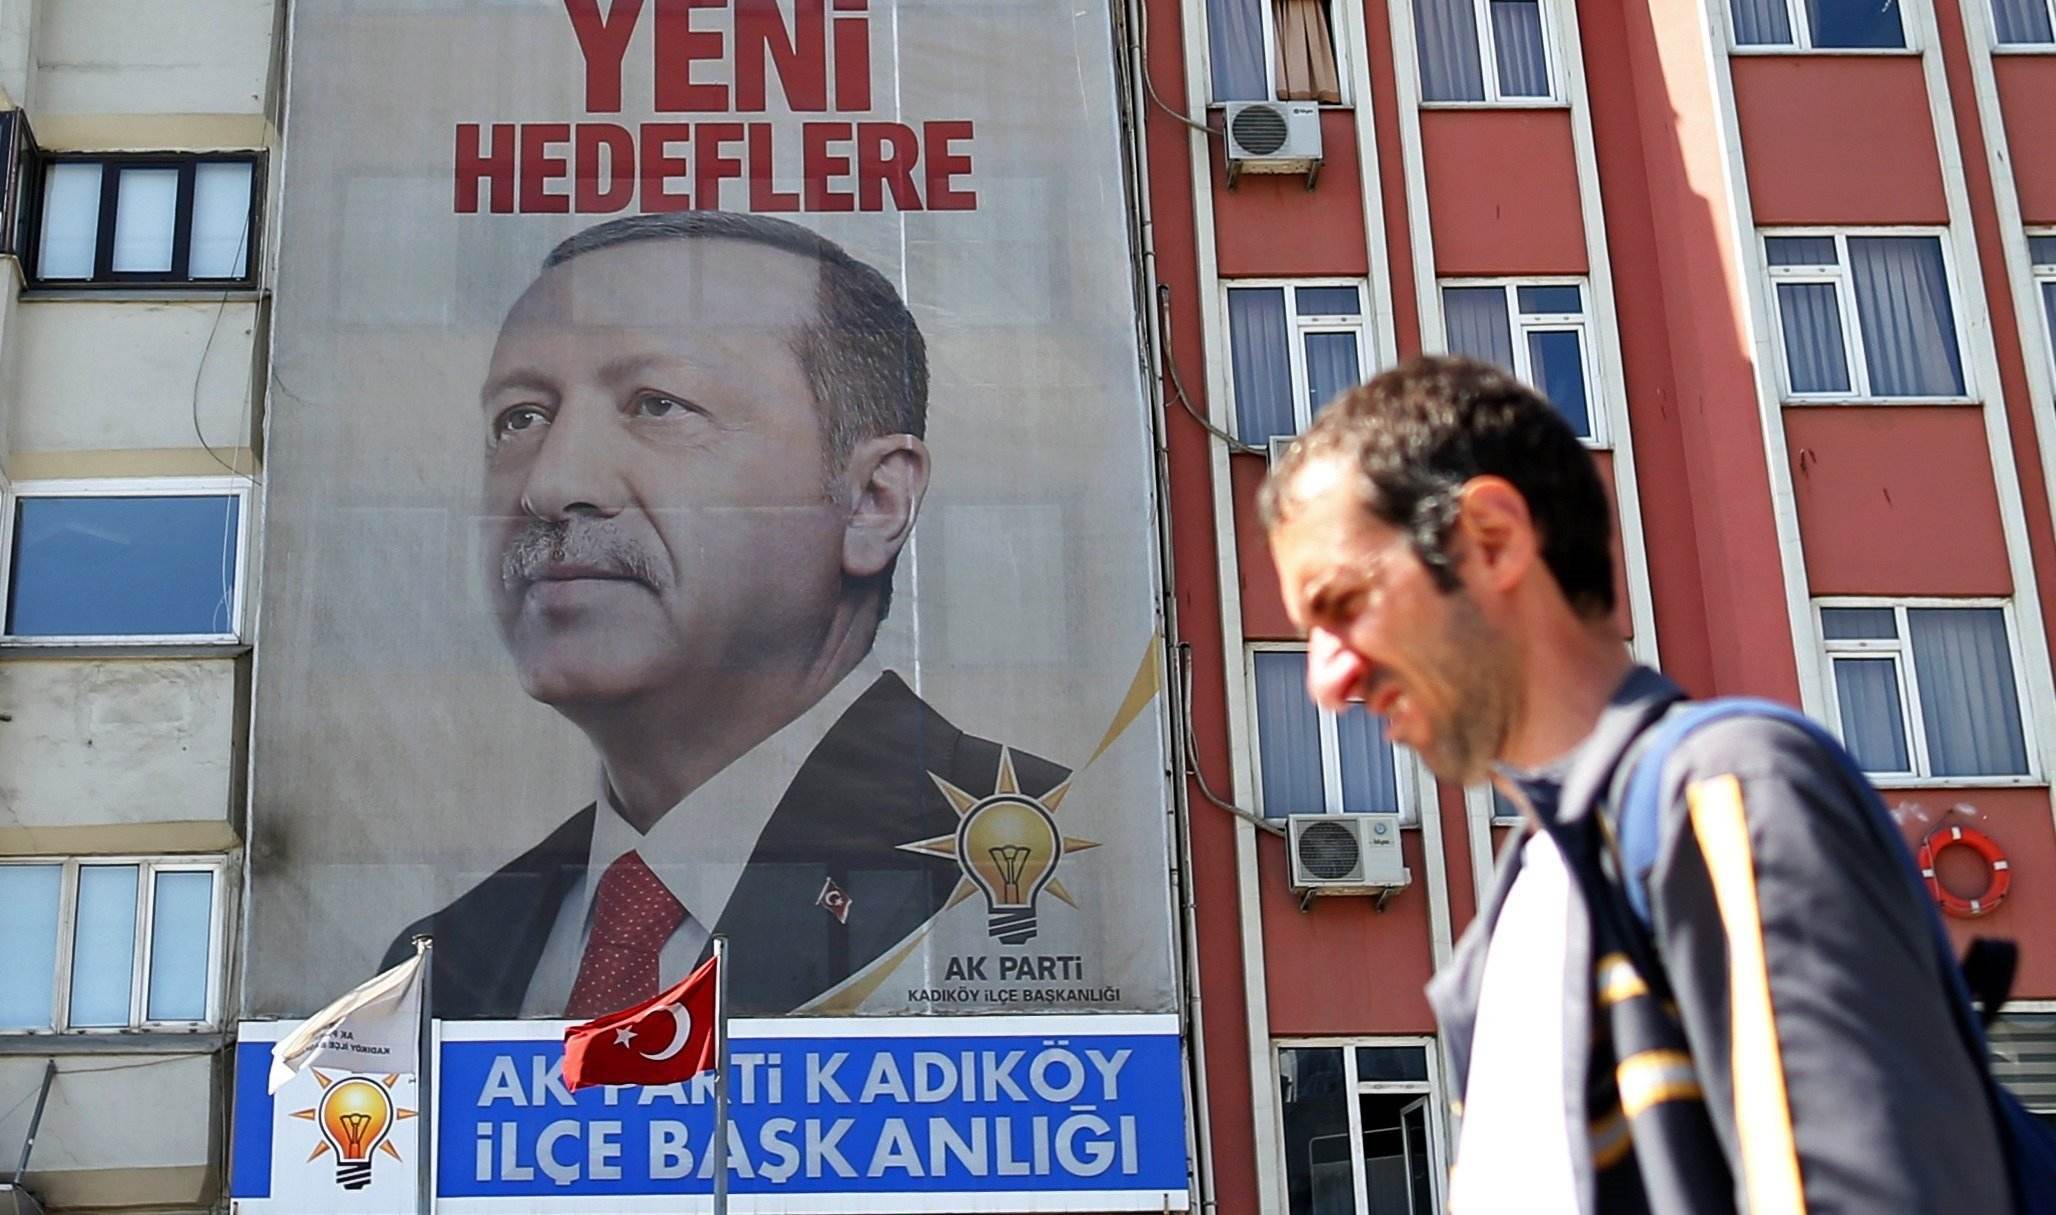 Erdogan aconsegueix avançar les eleccions turques al 24 de juny